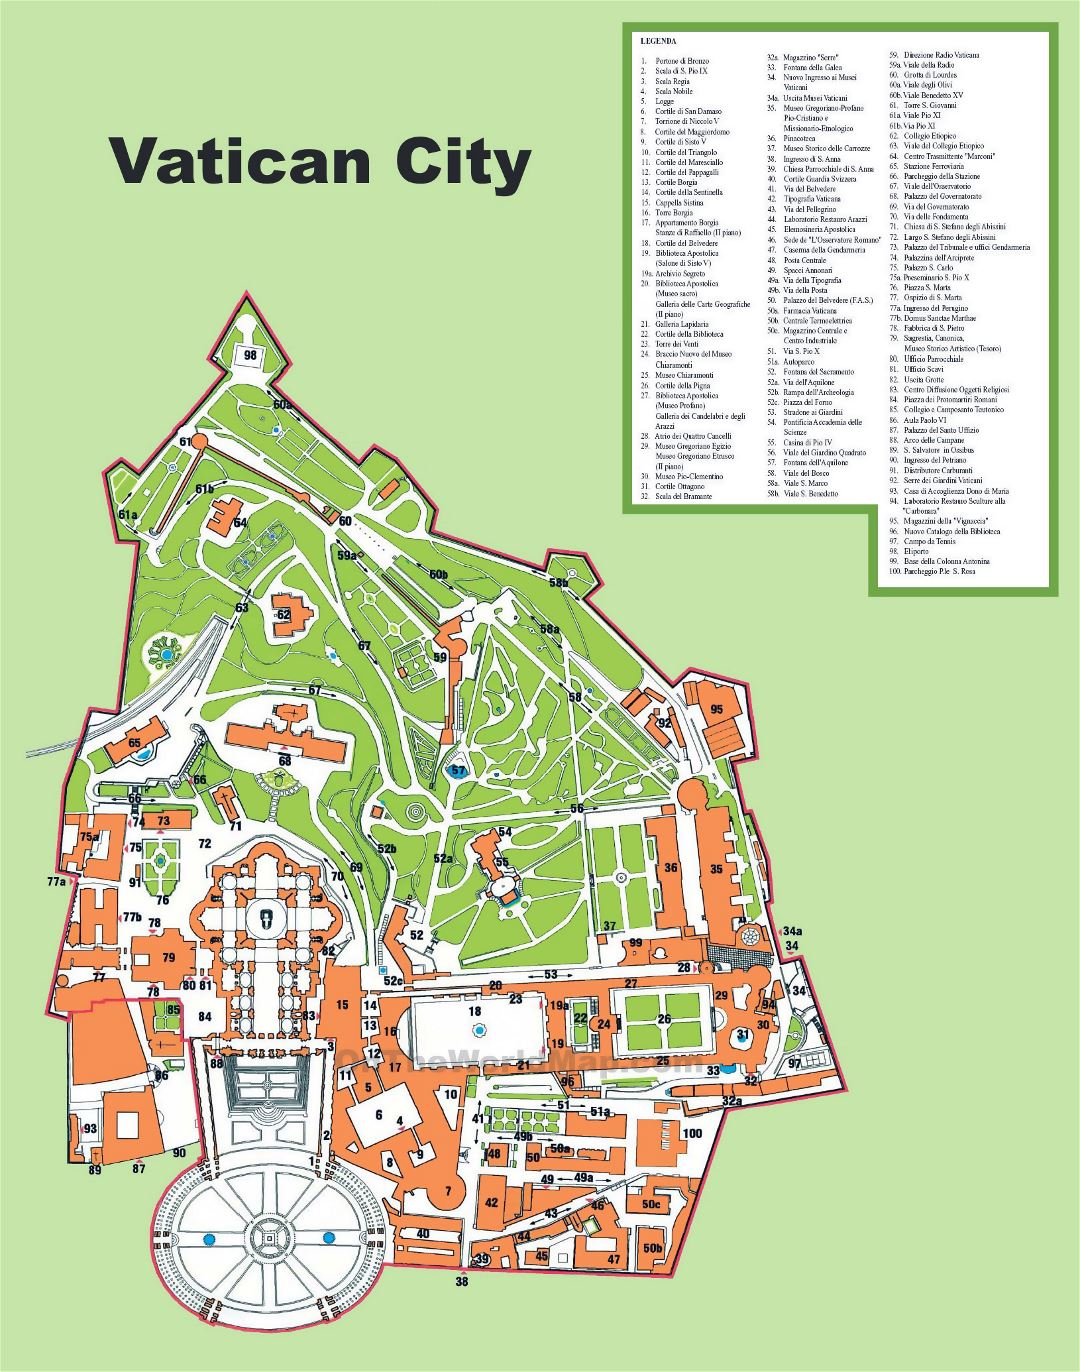 Большая детальная туристическая карта города Ватикан